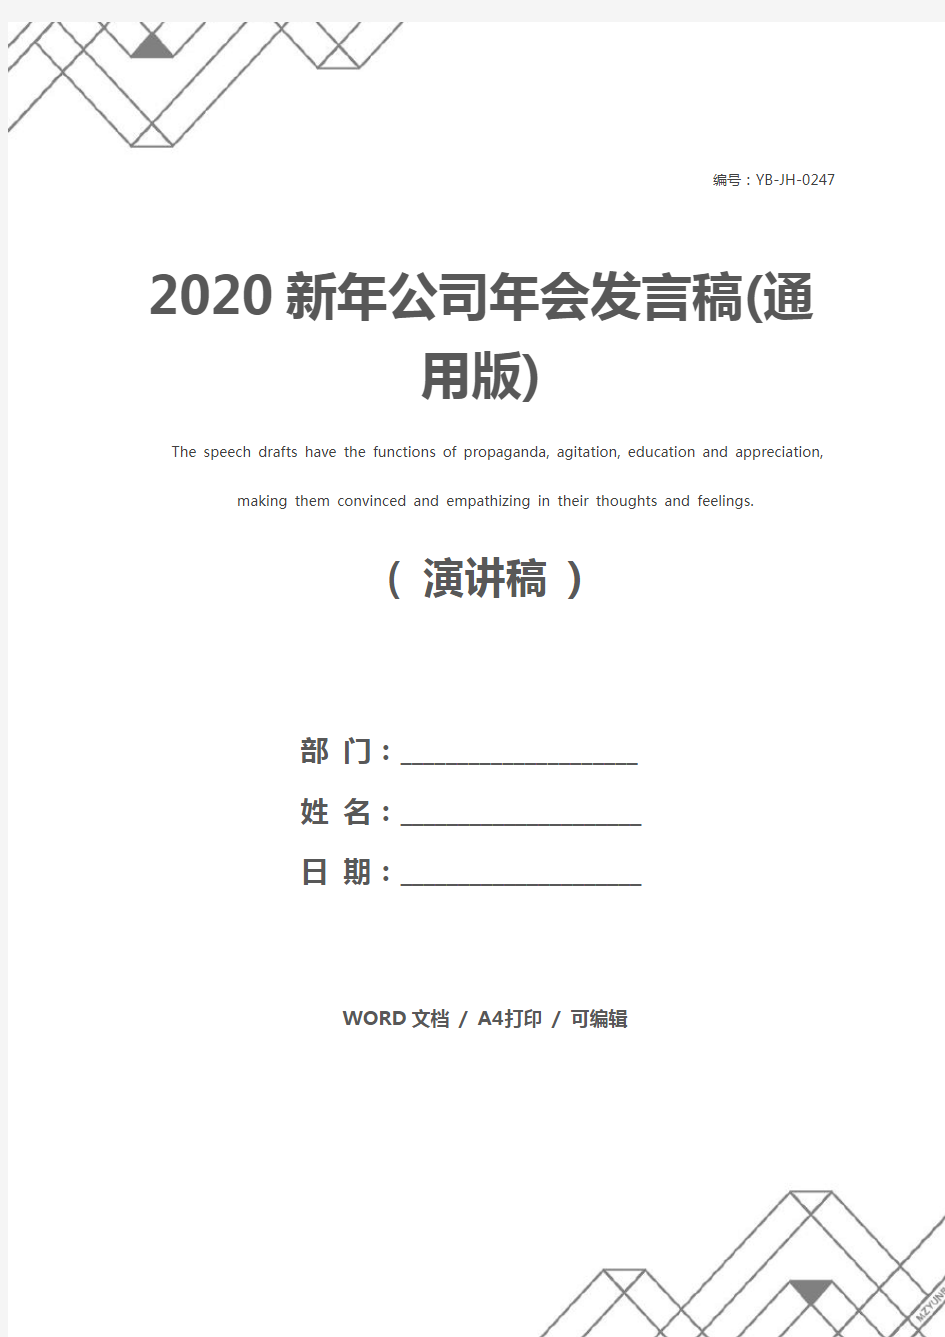 2020新年公司年会发言稿(通用版)